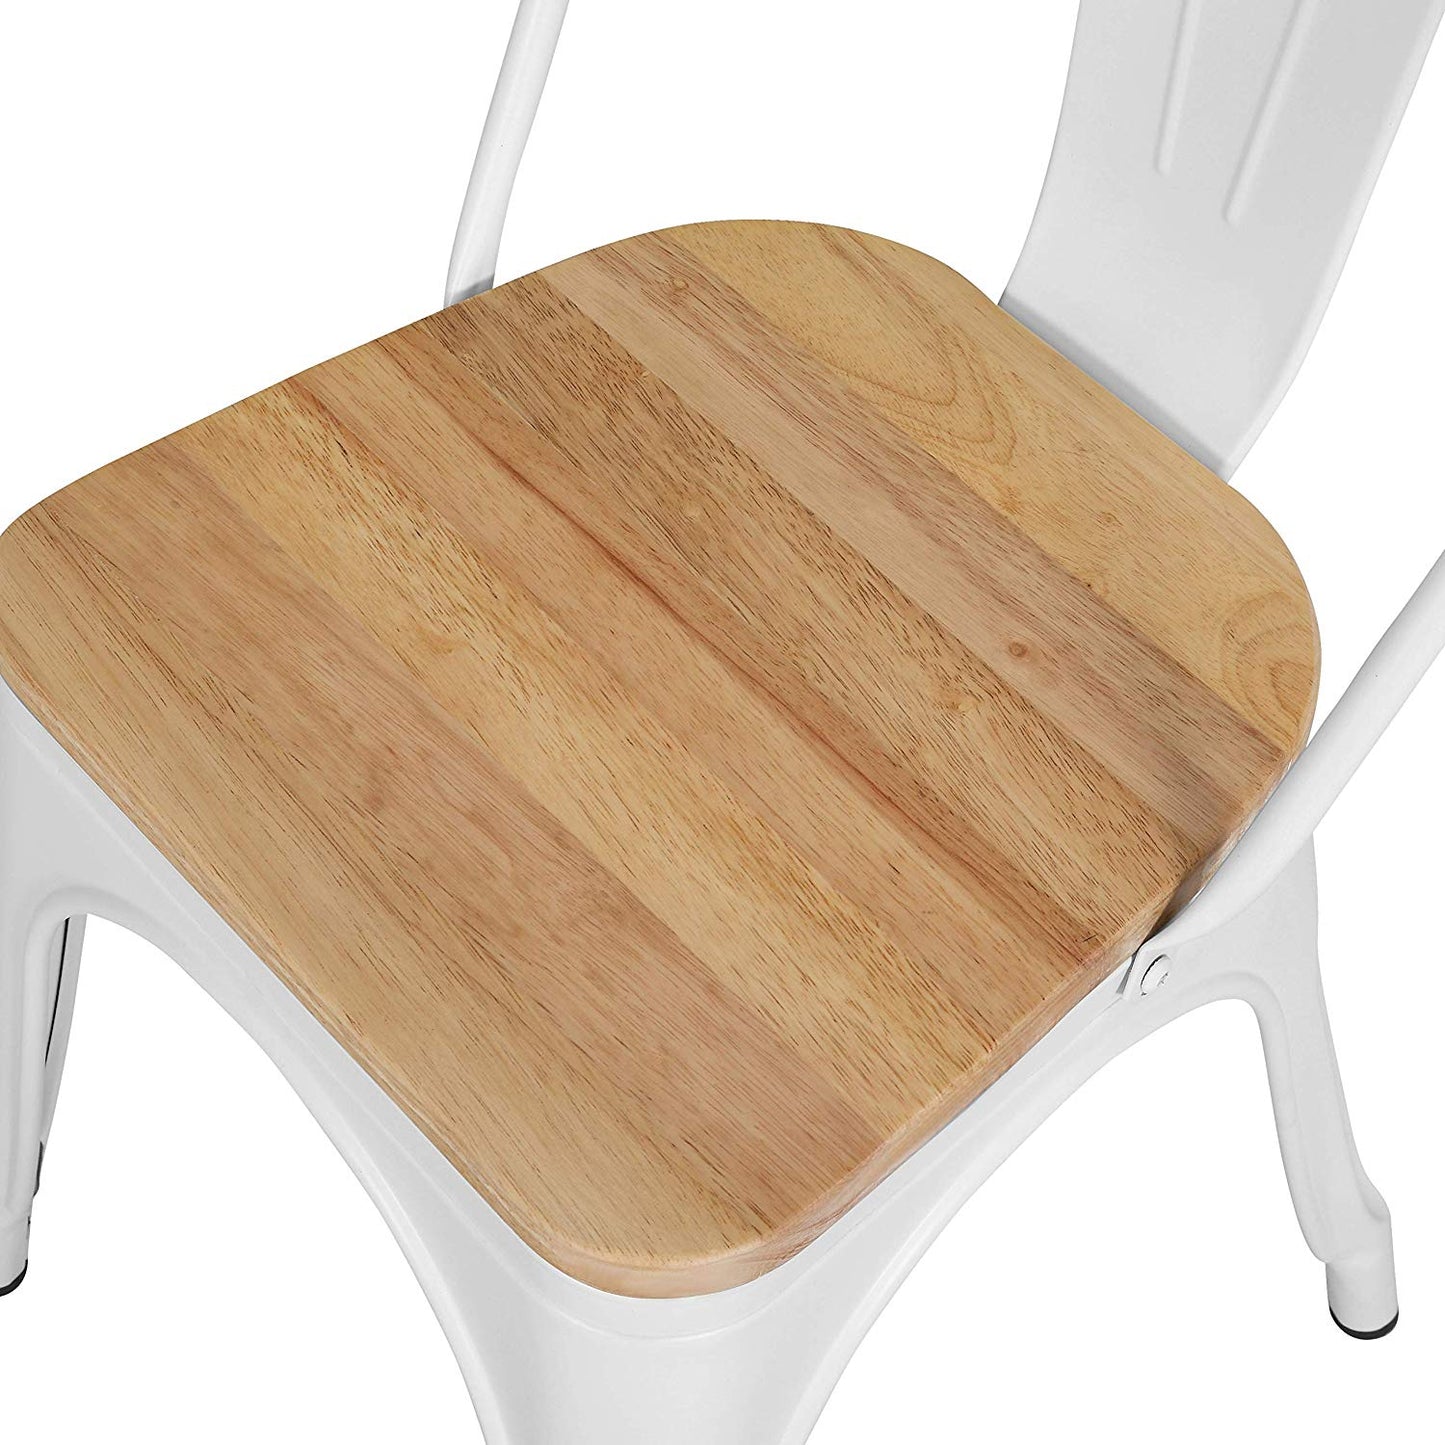 Chaise en métal blanc mat et assise en bois clair - Style industriel